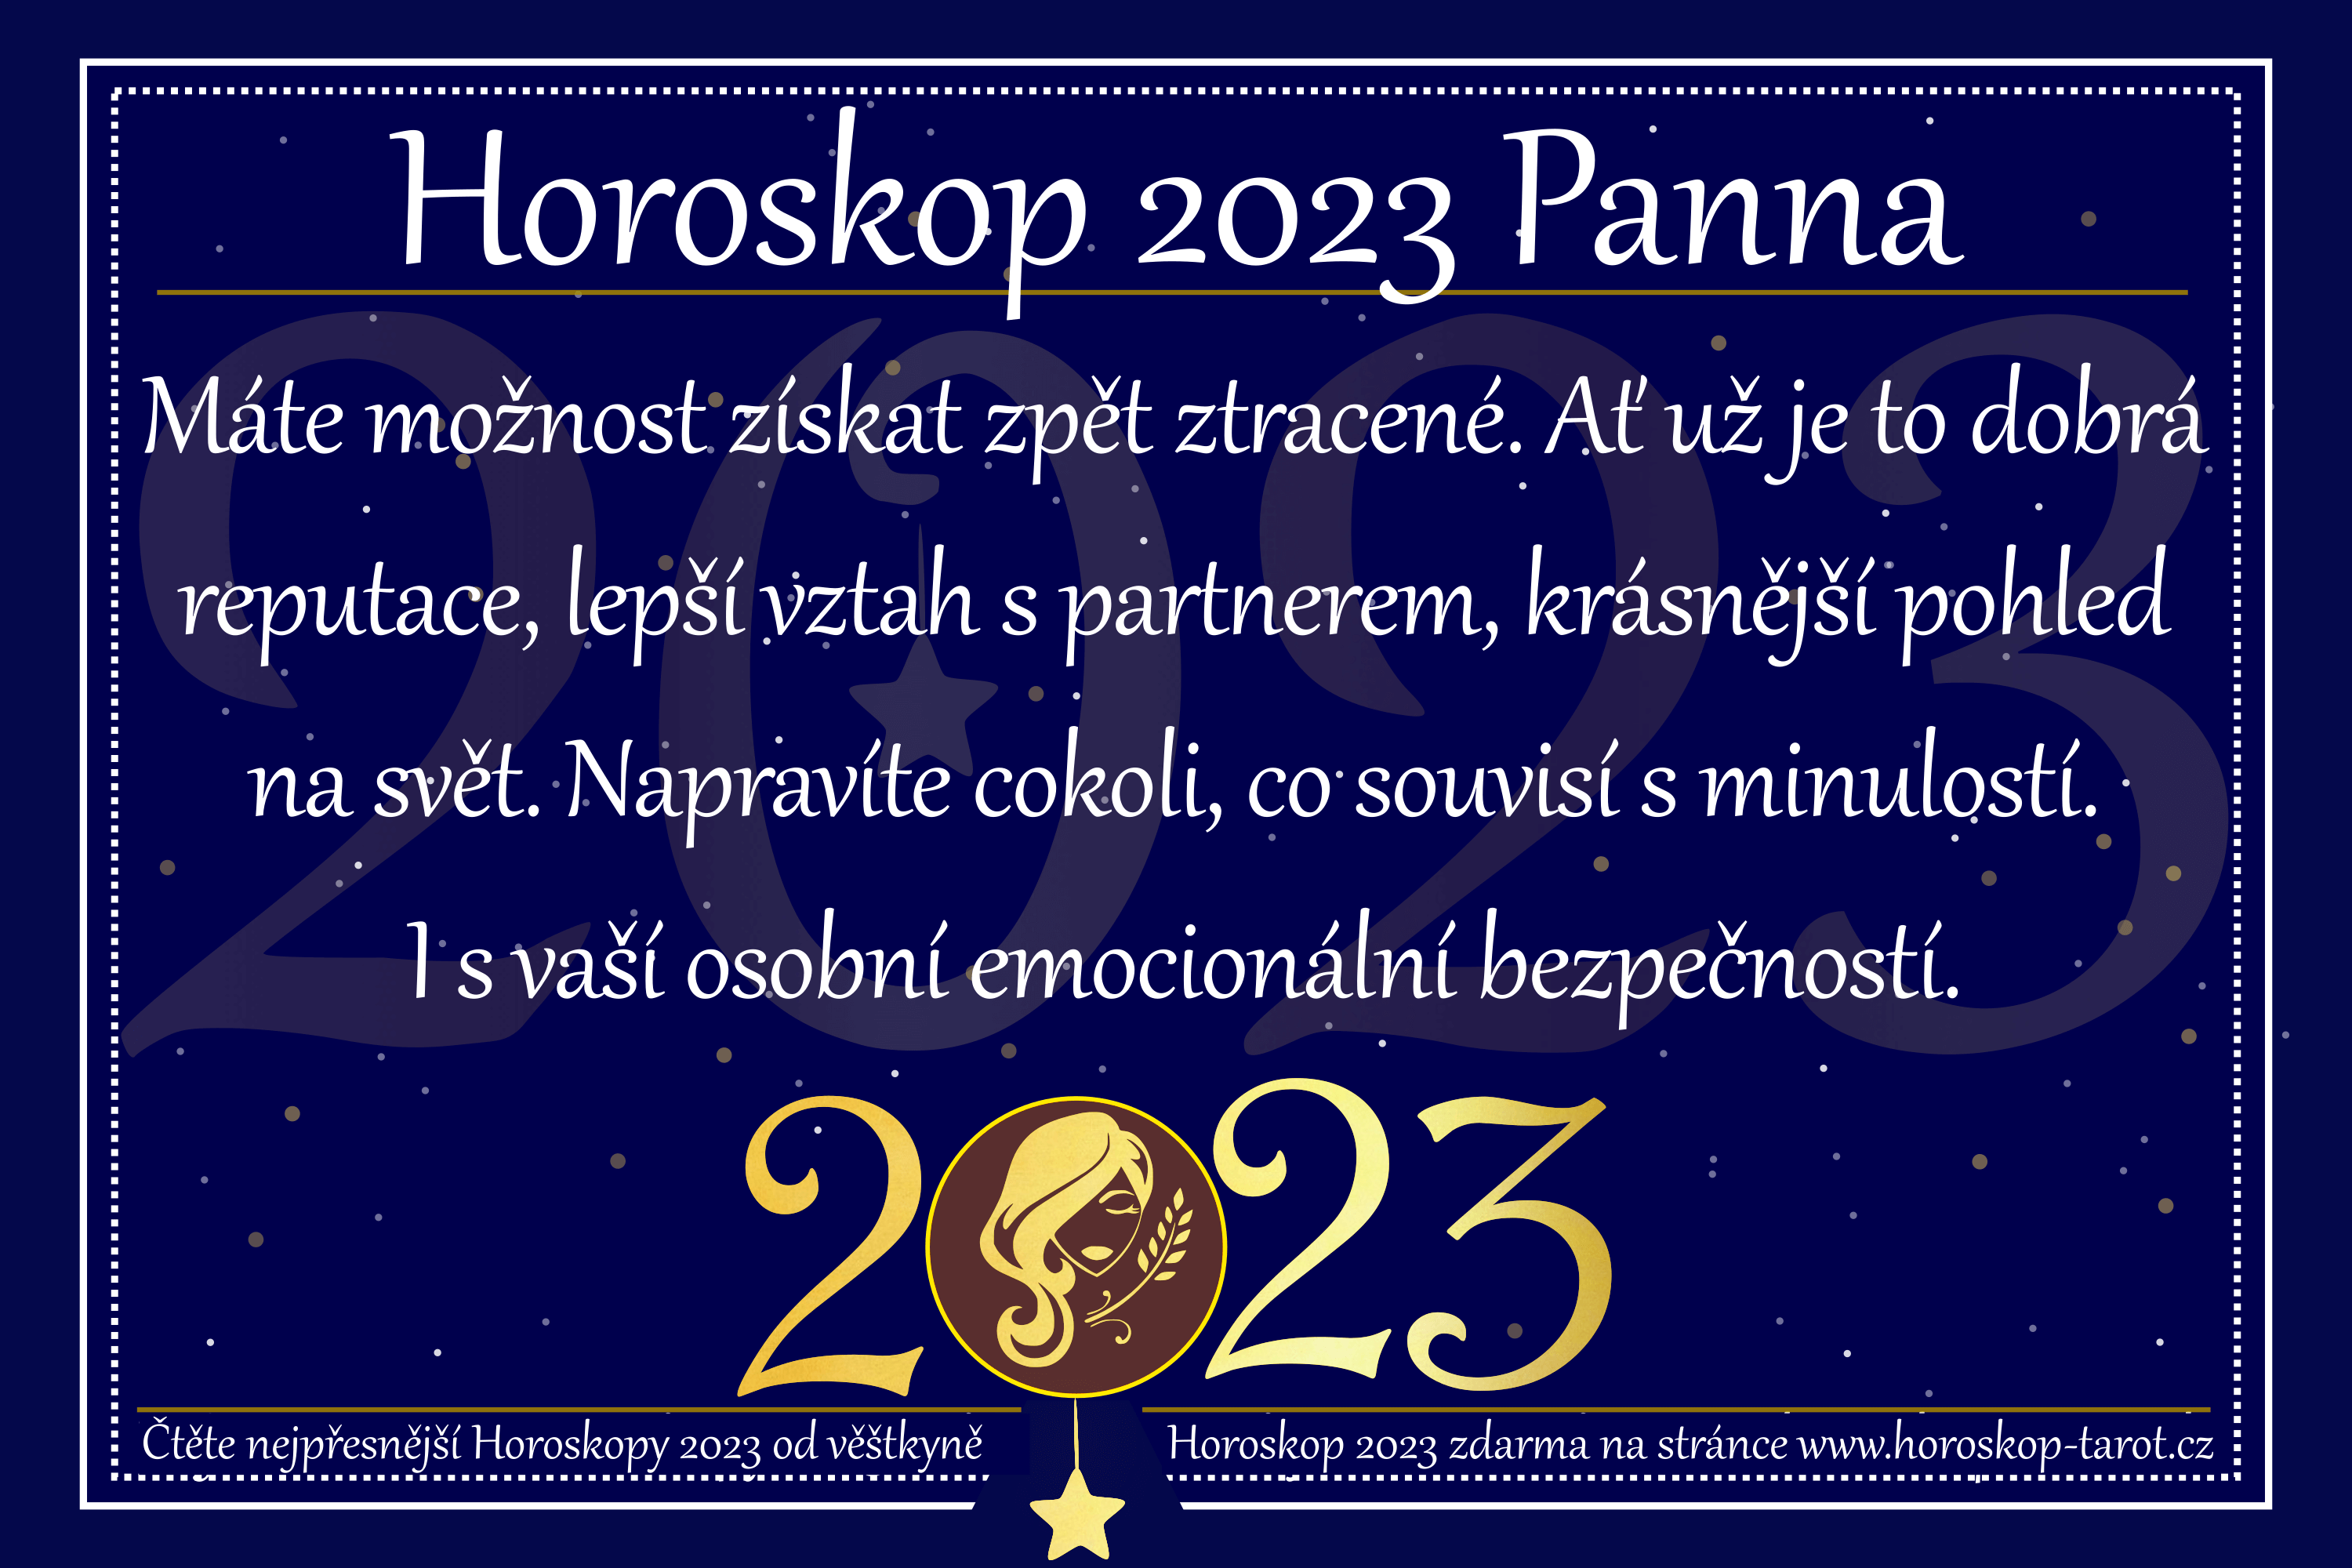 Horoskop 2023 Panna Předpověď & Budoucnost